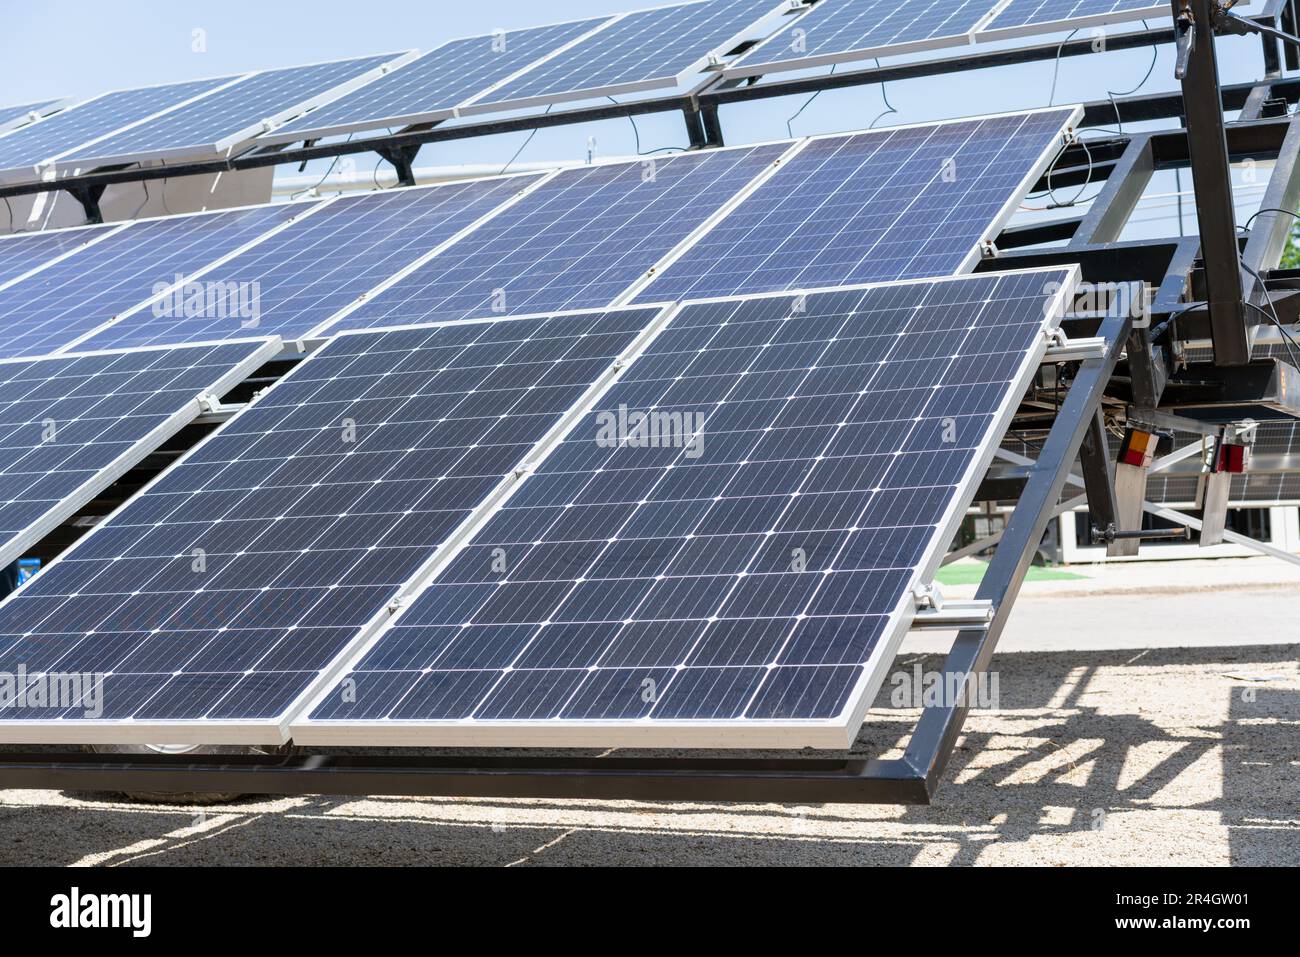 Solar energy panels installed on trailer, mobile solar farm. Stock Photo